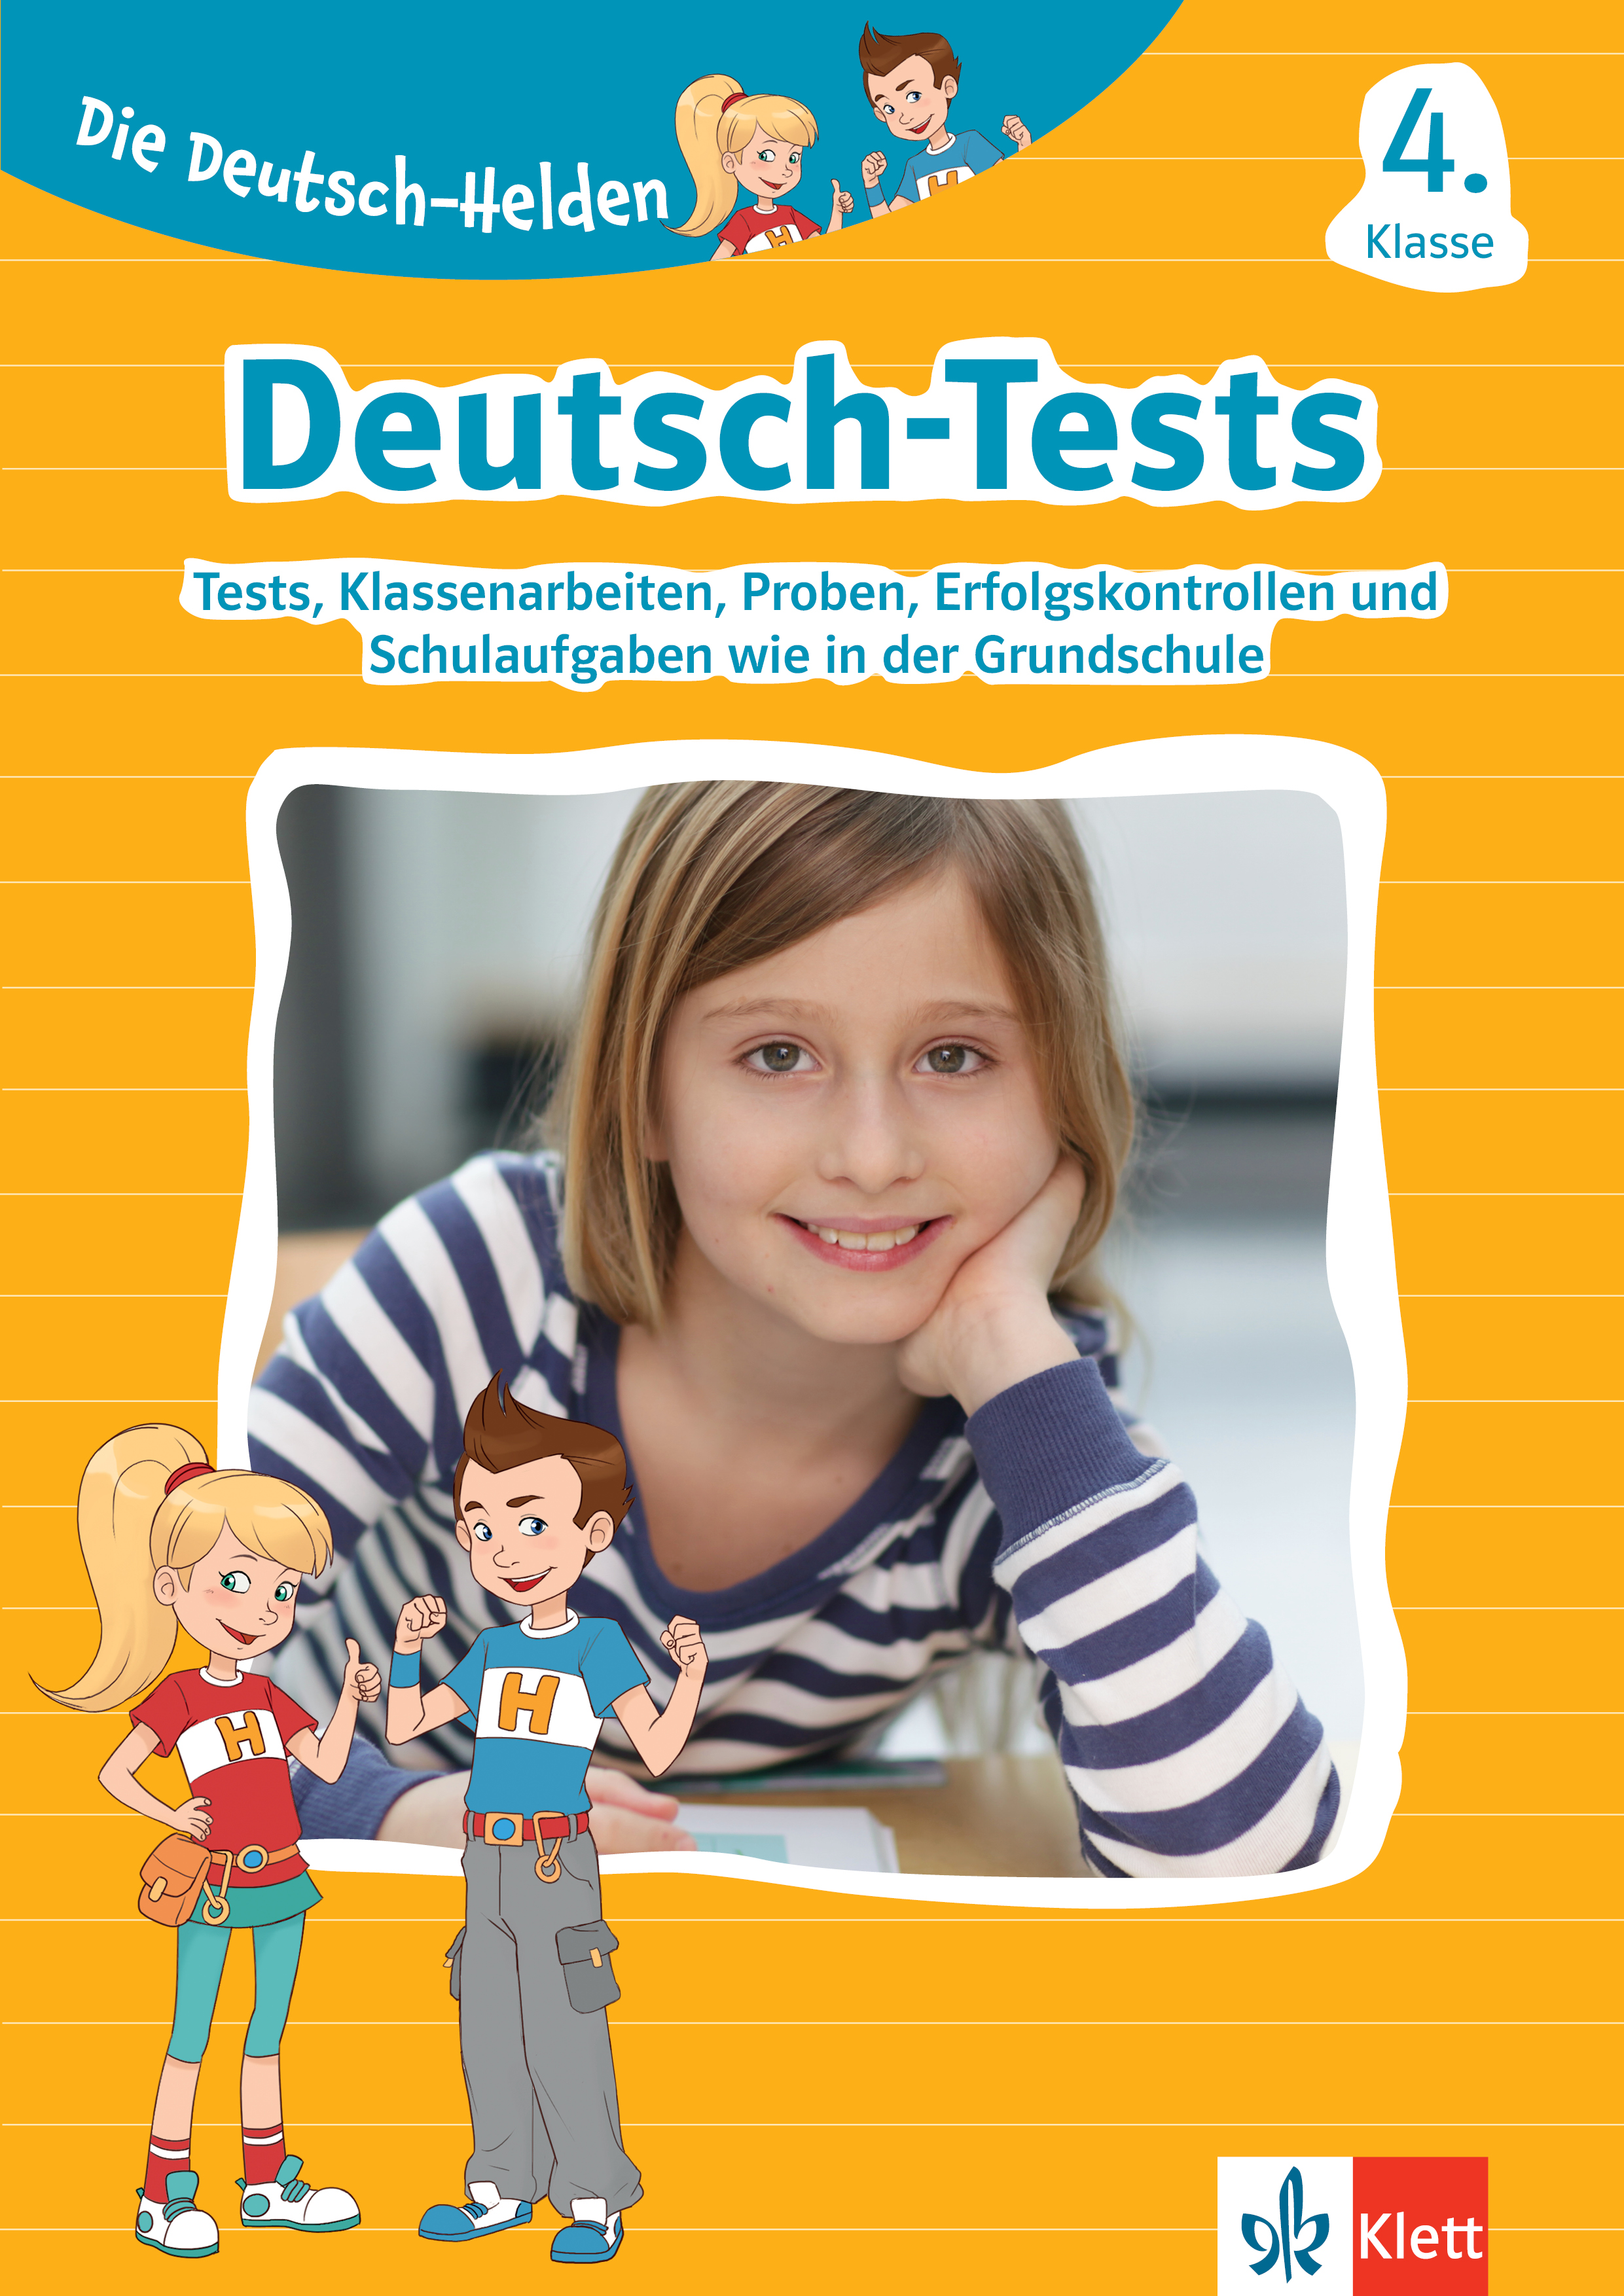 Klett Deutsch-Tests 4. Klasse